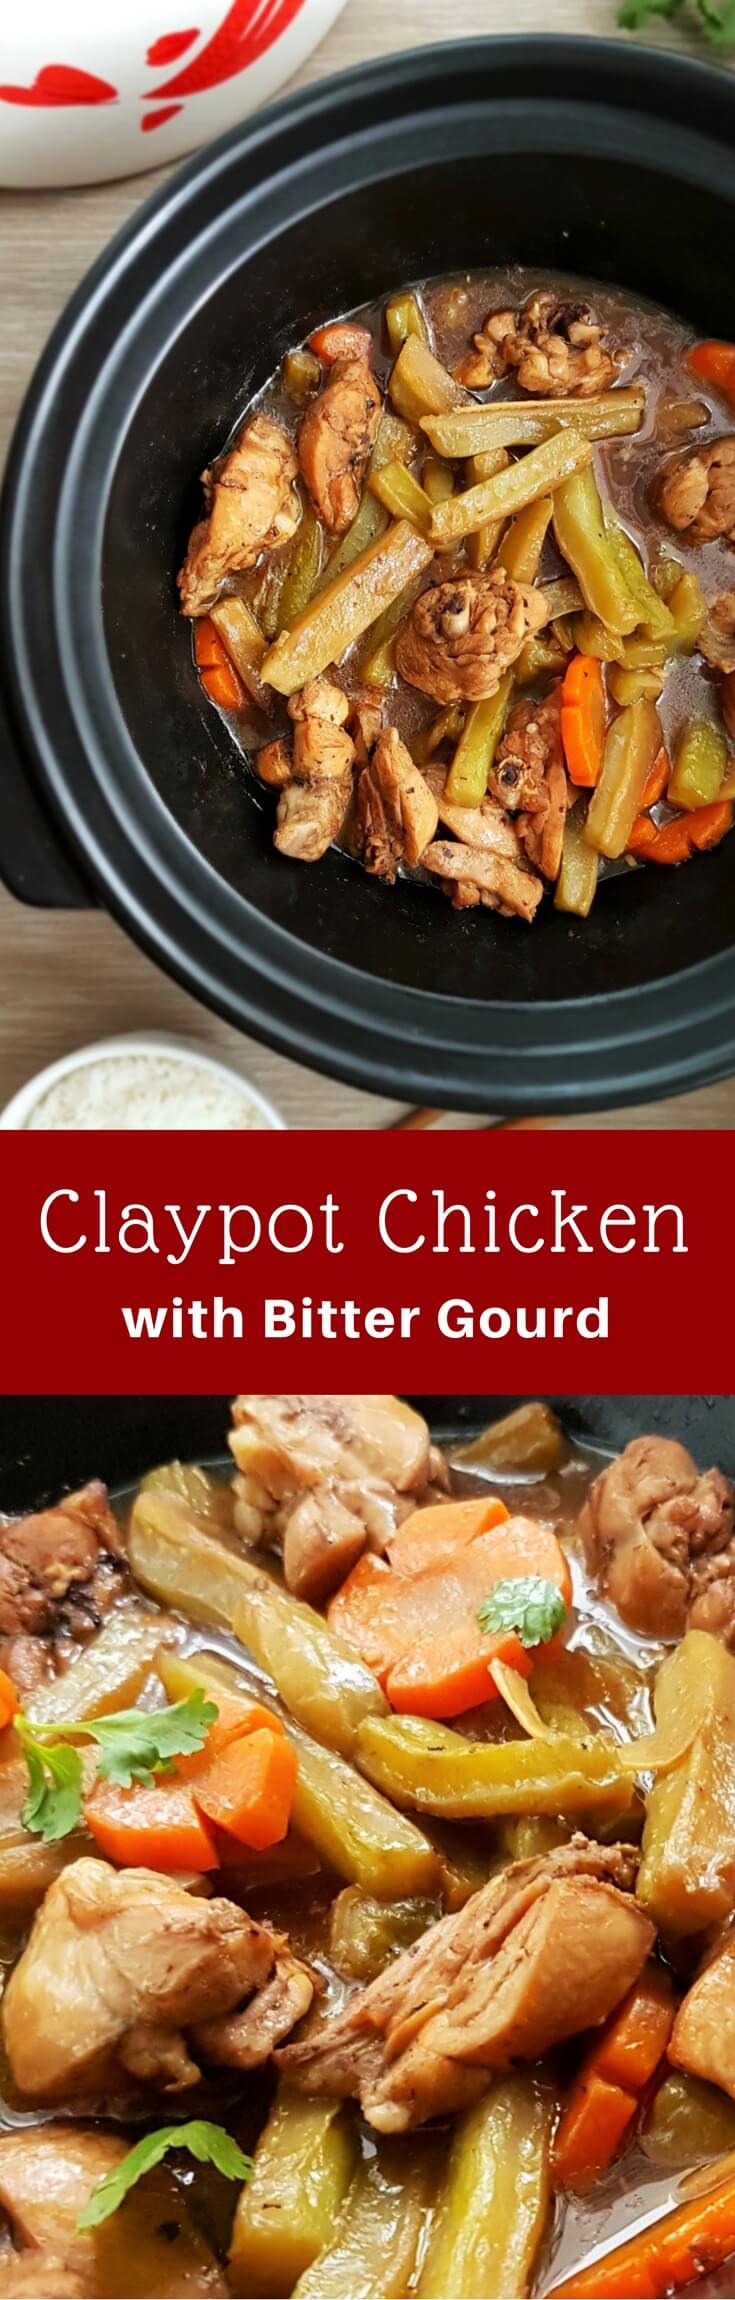 claypot chicken with bitter gourd